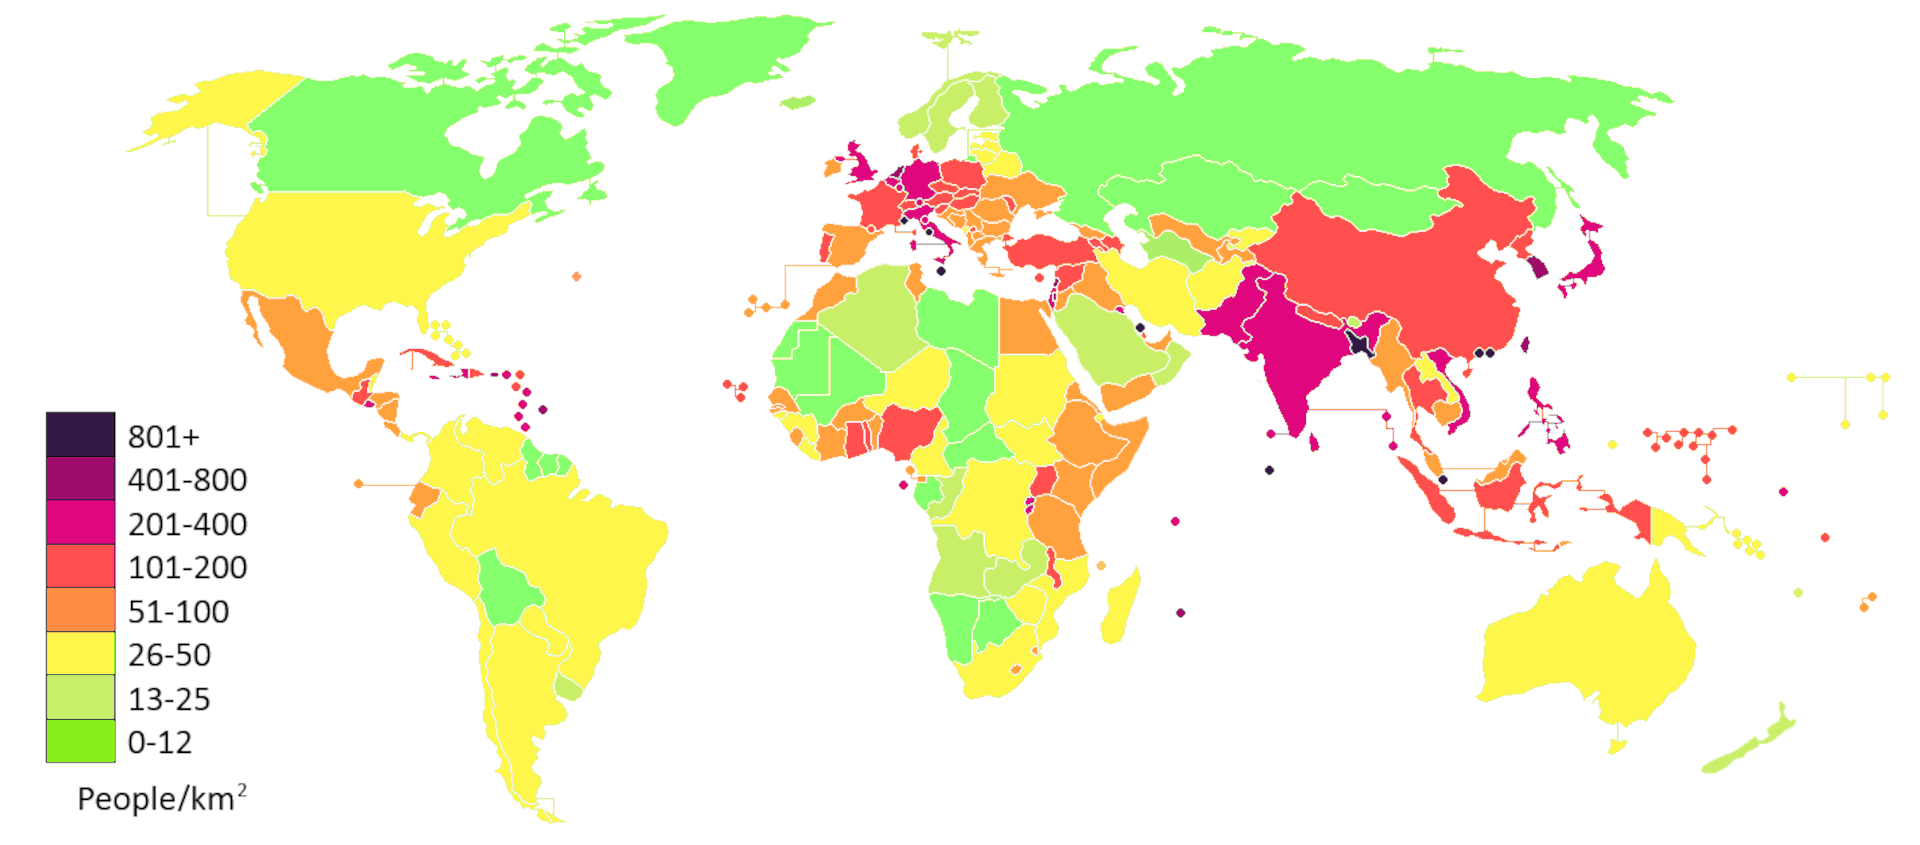 Mapa gęstości zaludnienia na świecie według danych dotyczących średniej gęstości zaludnienia państw. Barwna legenda opisuje liczbę mieszkańców na kilometr kwadratowy. Przykładowo dla Polski jest to około 100‑150 osób, dla Stanów Zjednoczonych 25‑50 osób, a dla Indii od 300 do 1000 osób na kilometr kwadratowy.